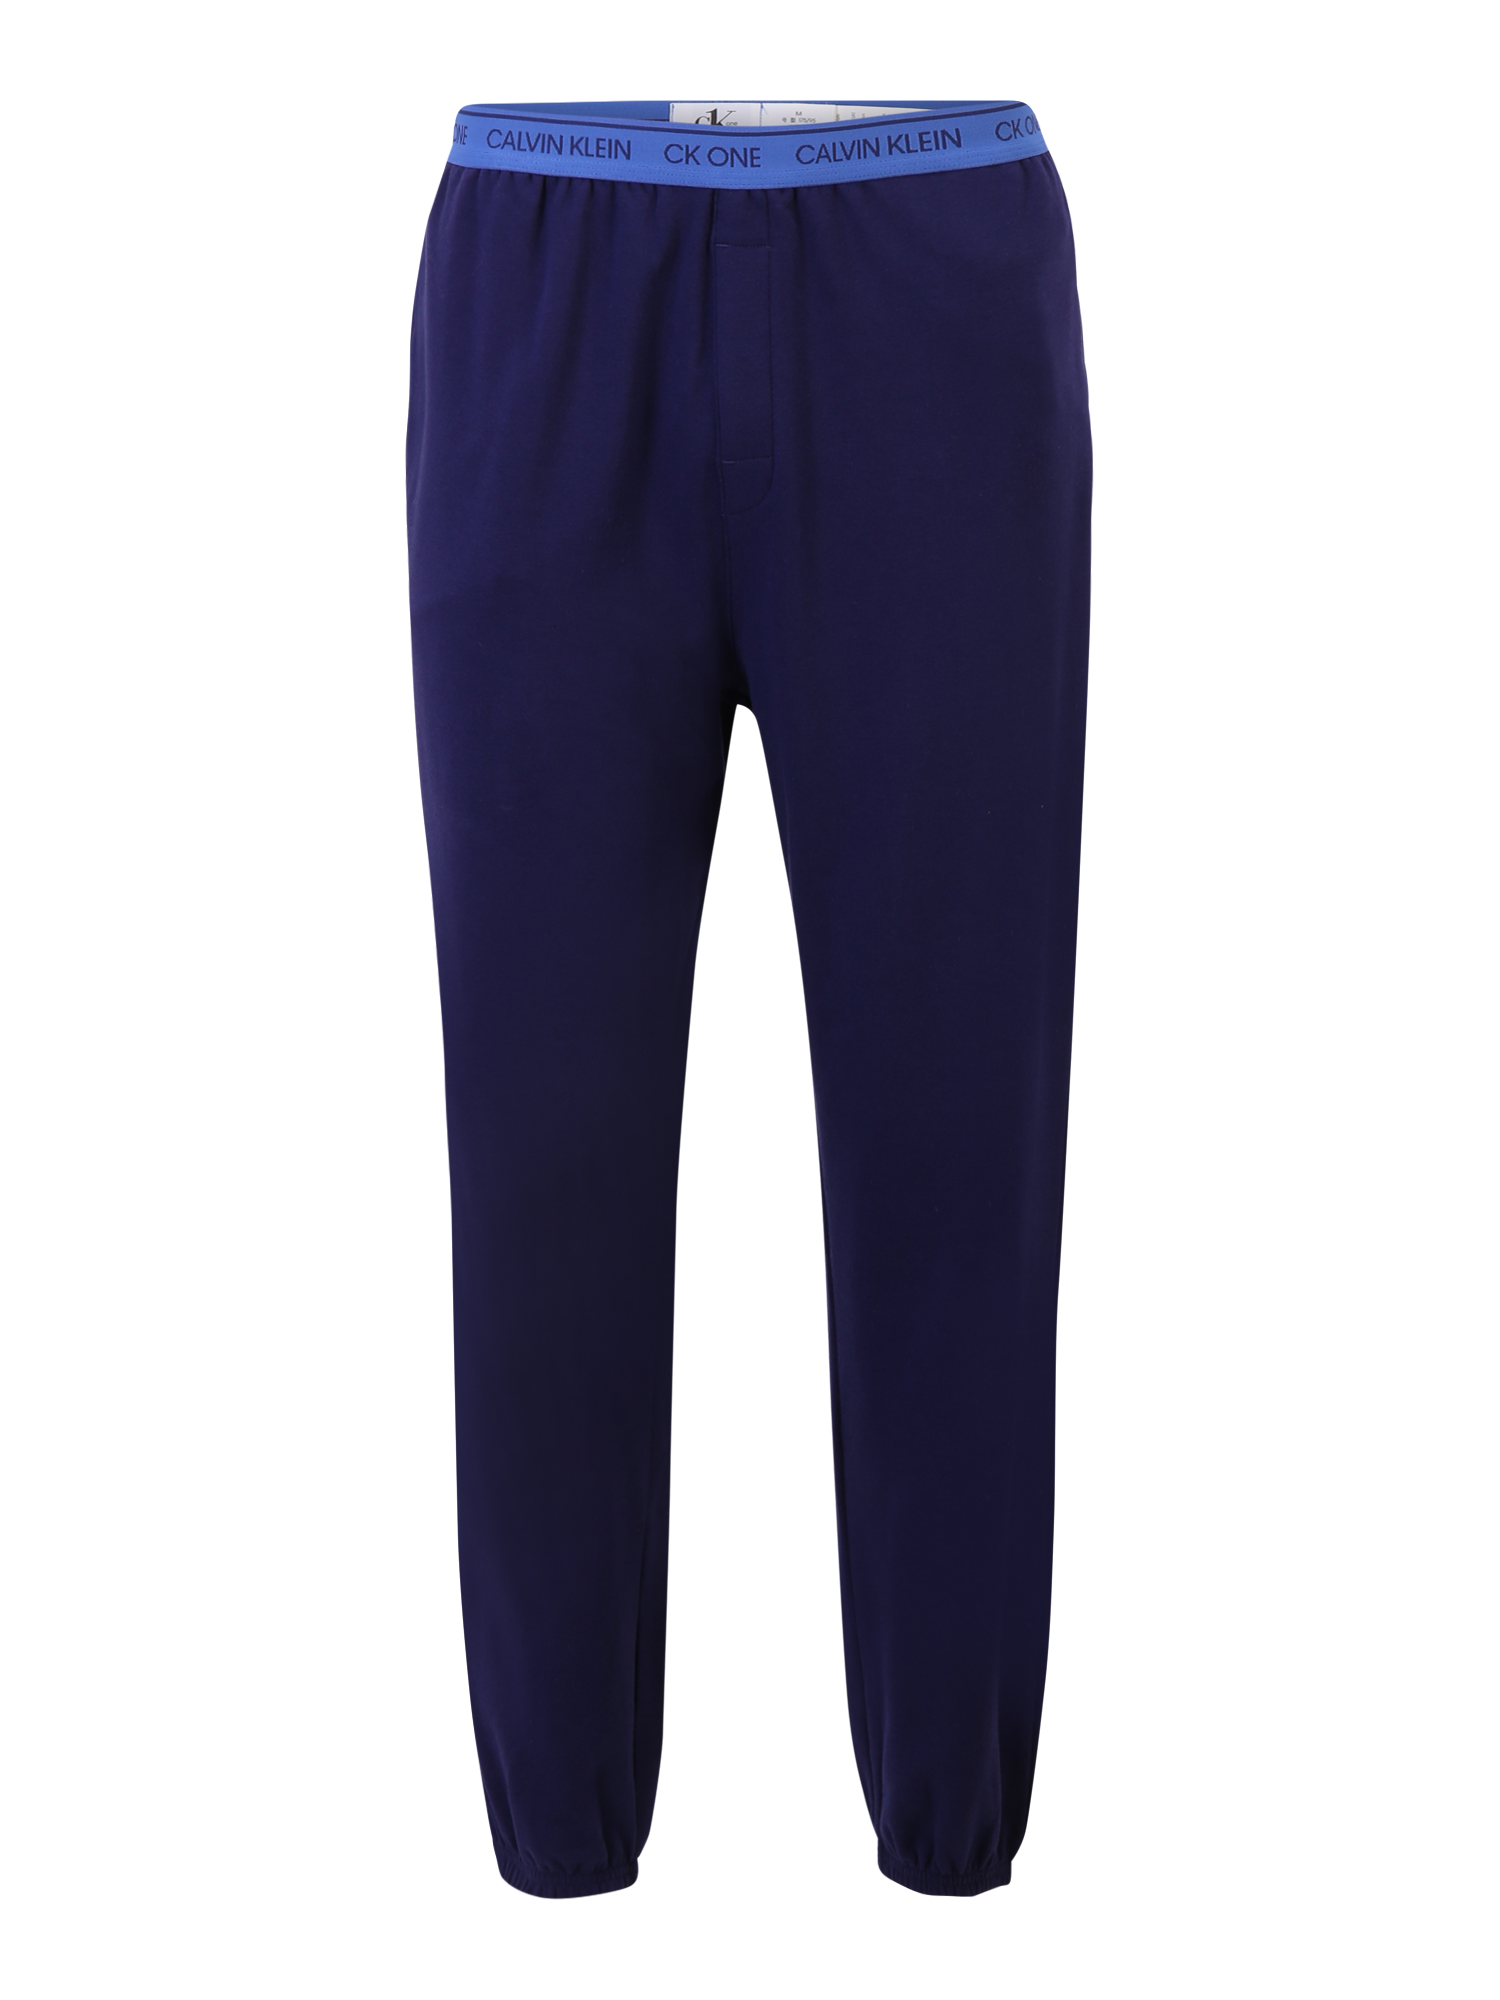 Mężczyźni Bielizna Calvin Klein Underwear Spodnie od piżamy w kolorze Niebieska Noc, Niebieskim 